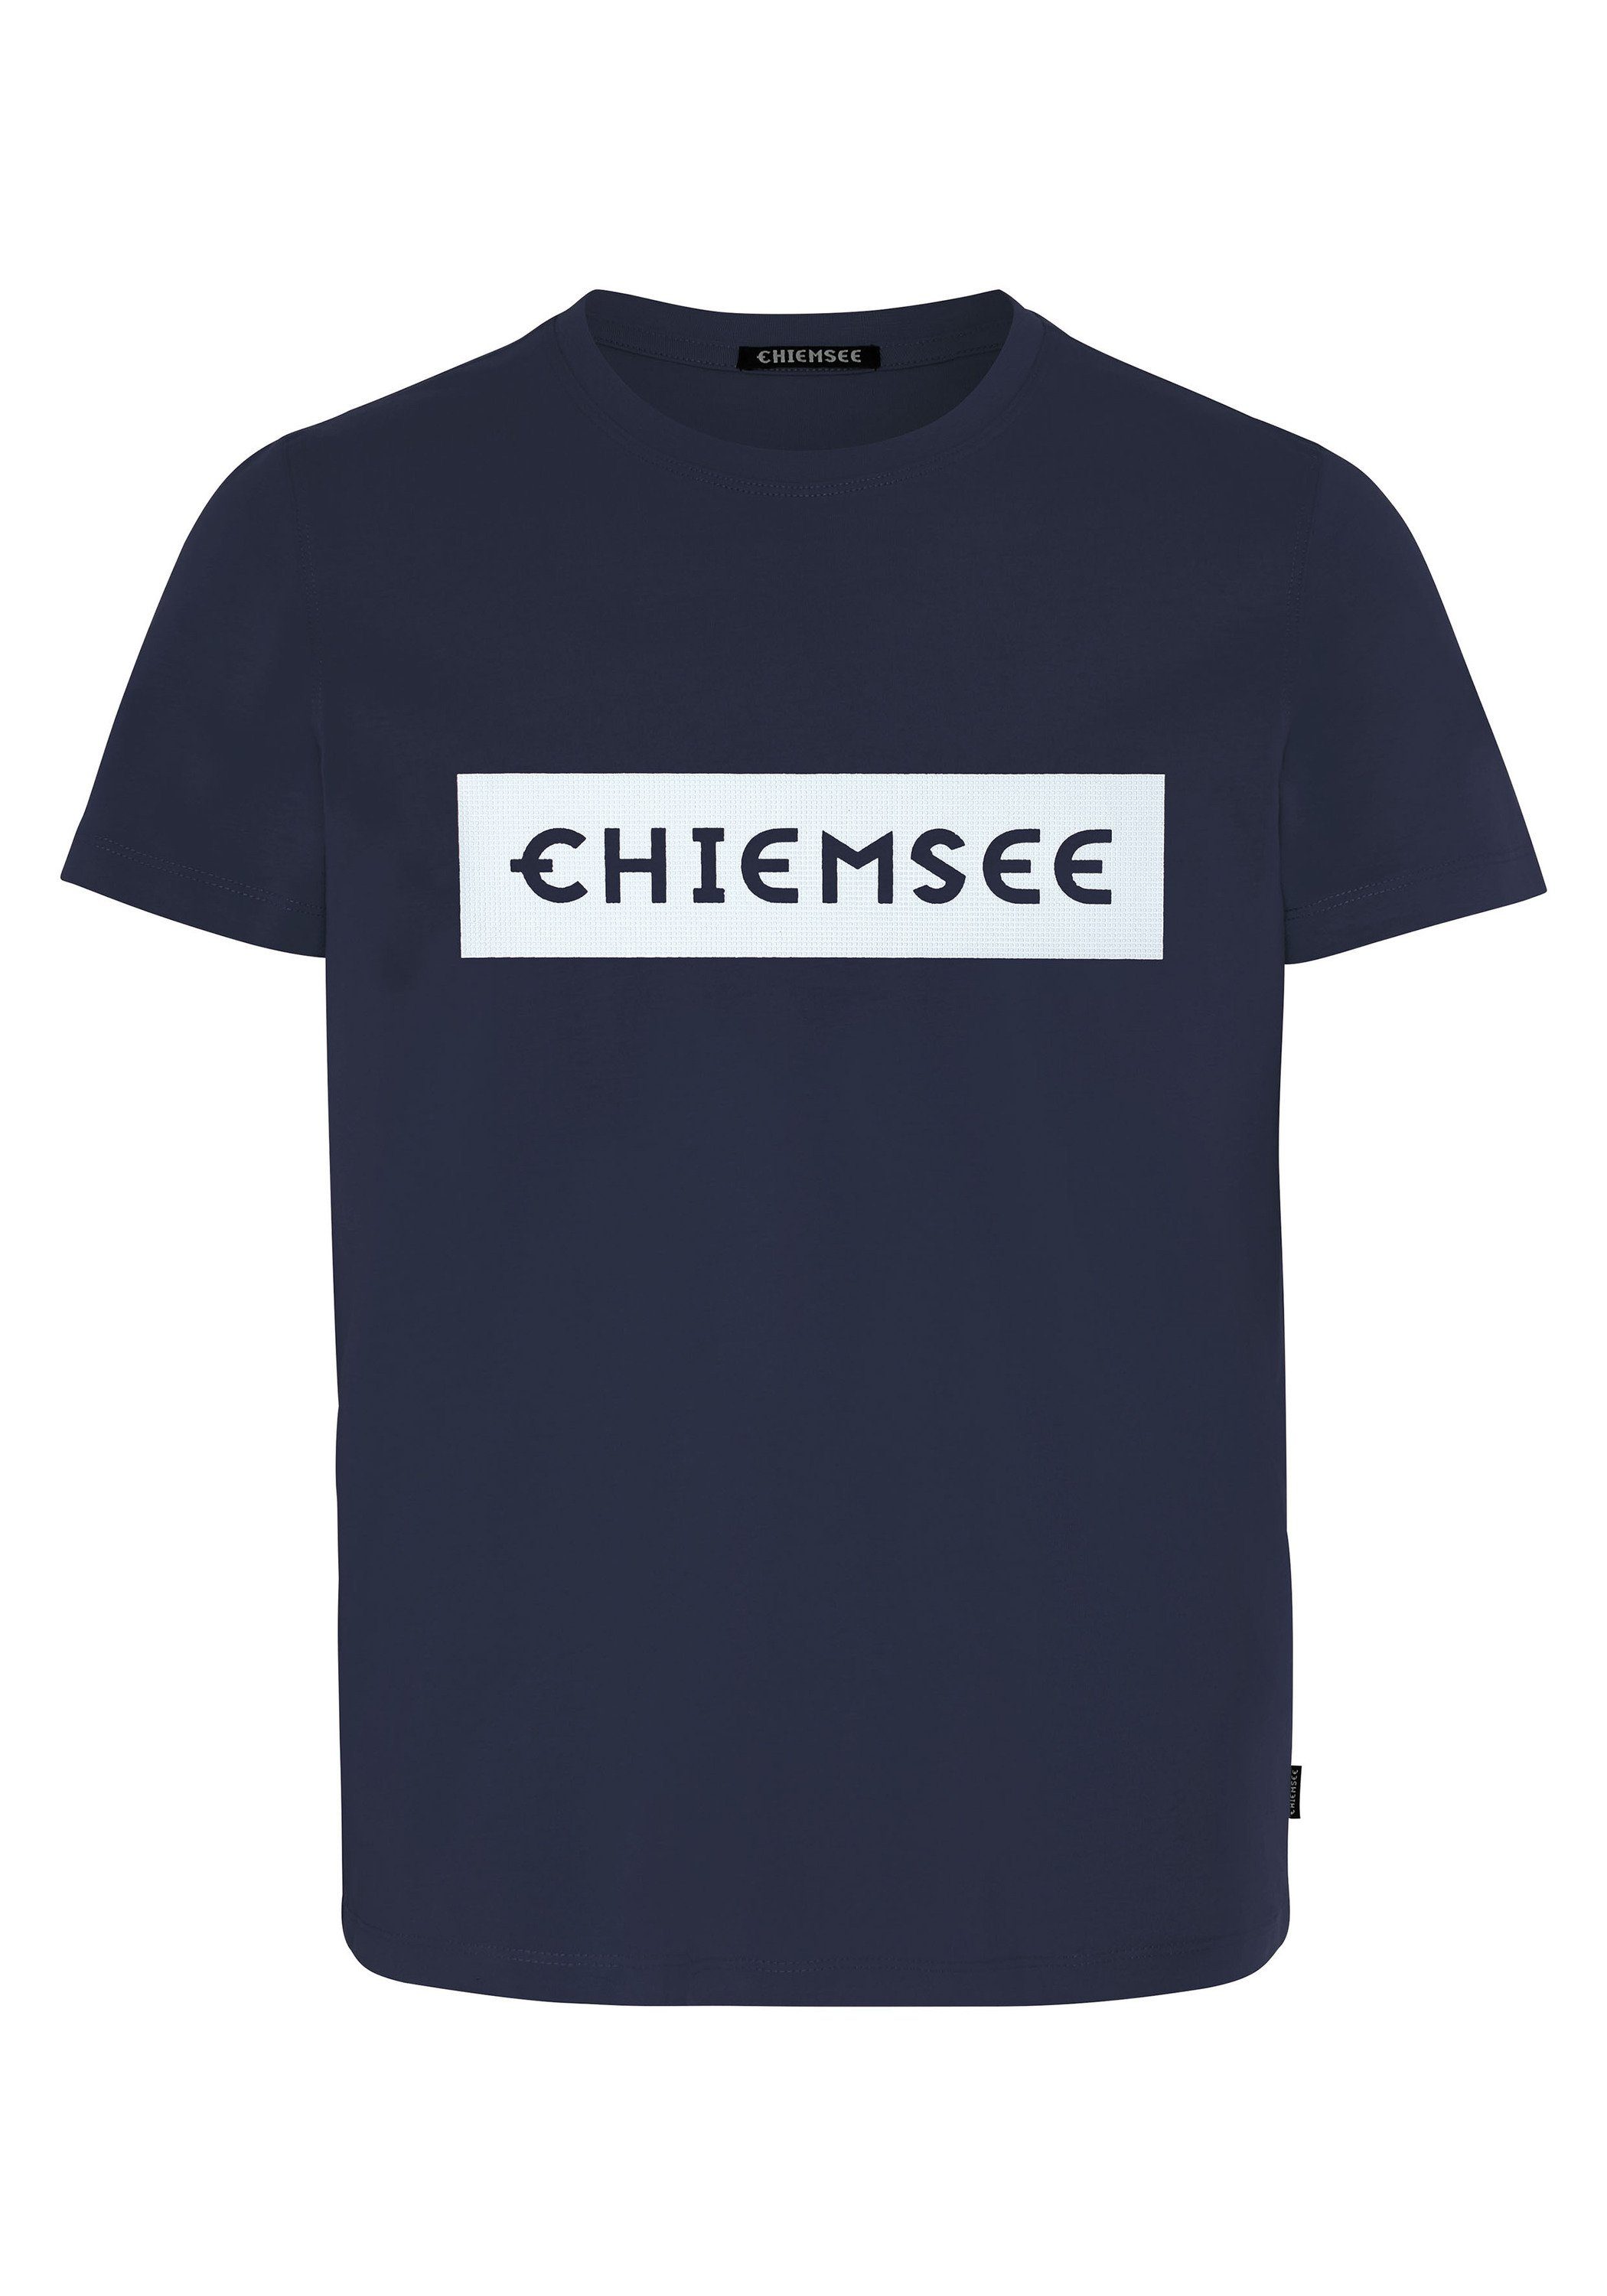 Chiemsee Print-Shirt T-Shirt 1 Blue/Wht Dk Markenschriftzug Dif plakativem mit